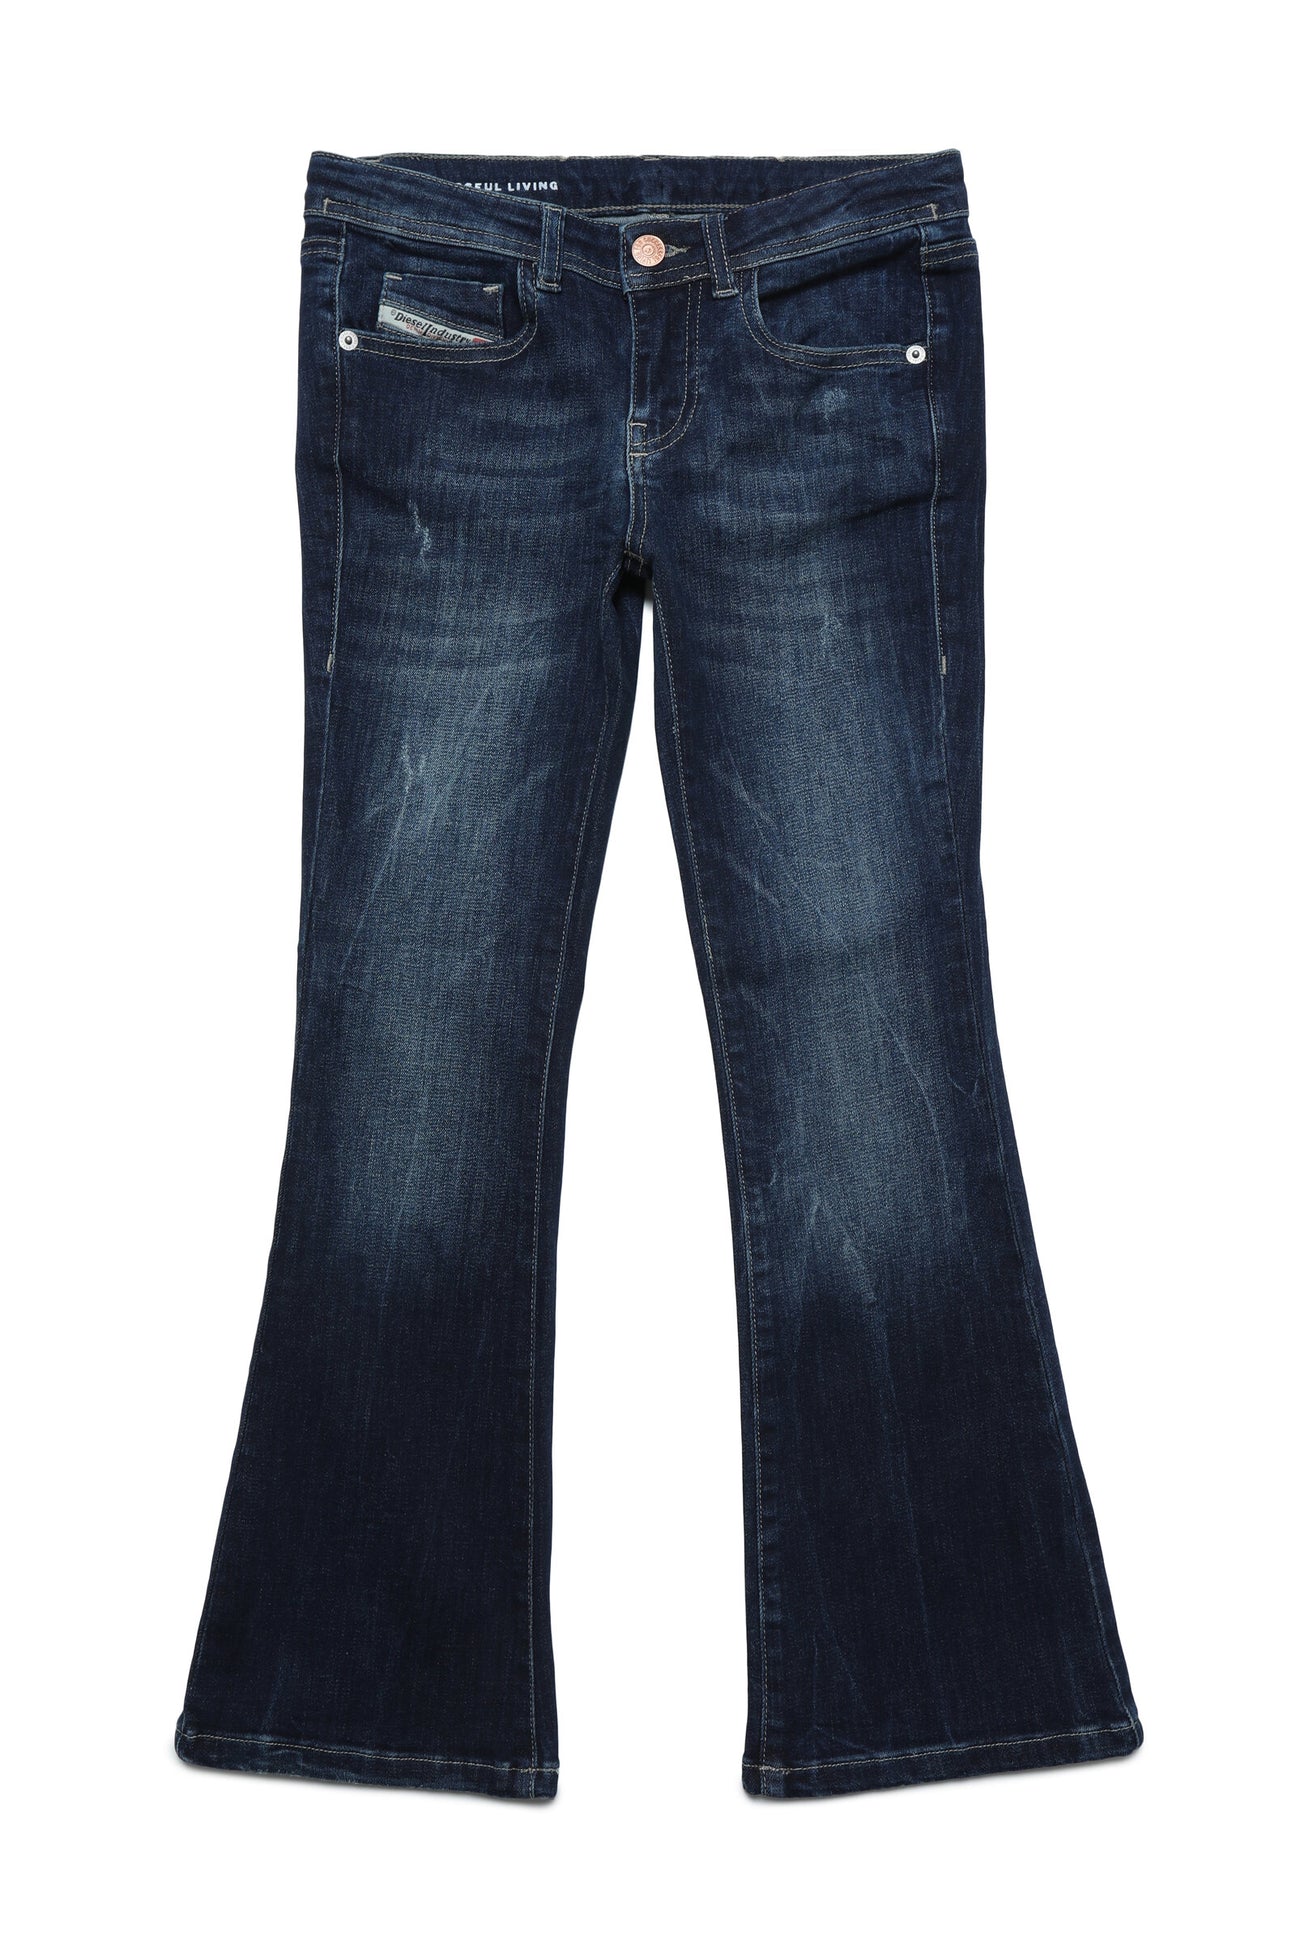 Jeans 1969 D-Ebbey bootcut blu scuro con abrasioni Jeans 1969 D-Ebbey bootcut blu scuro con abrasioni